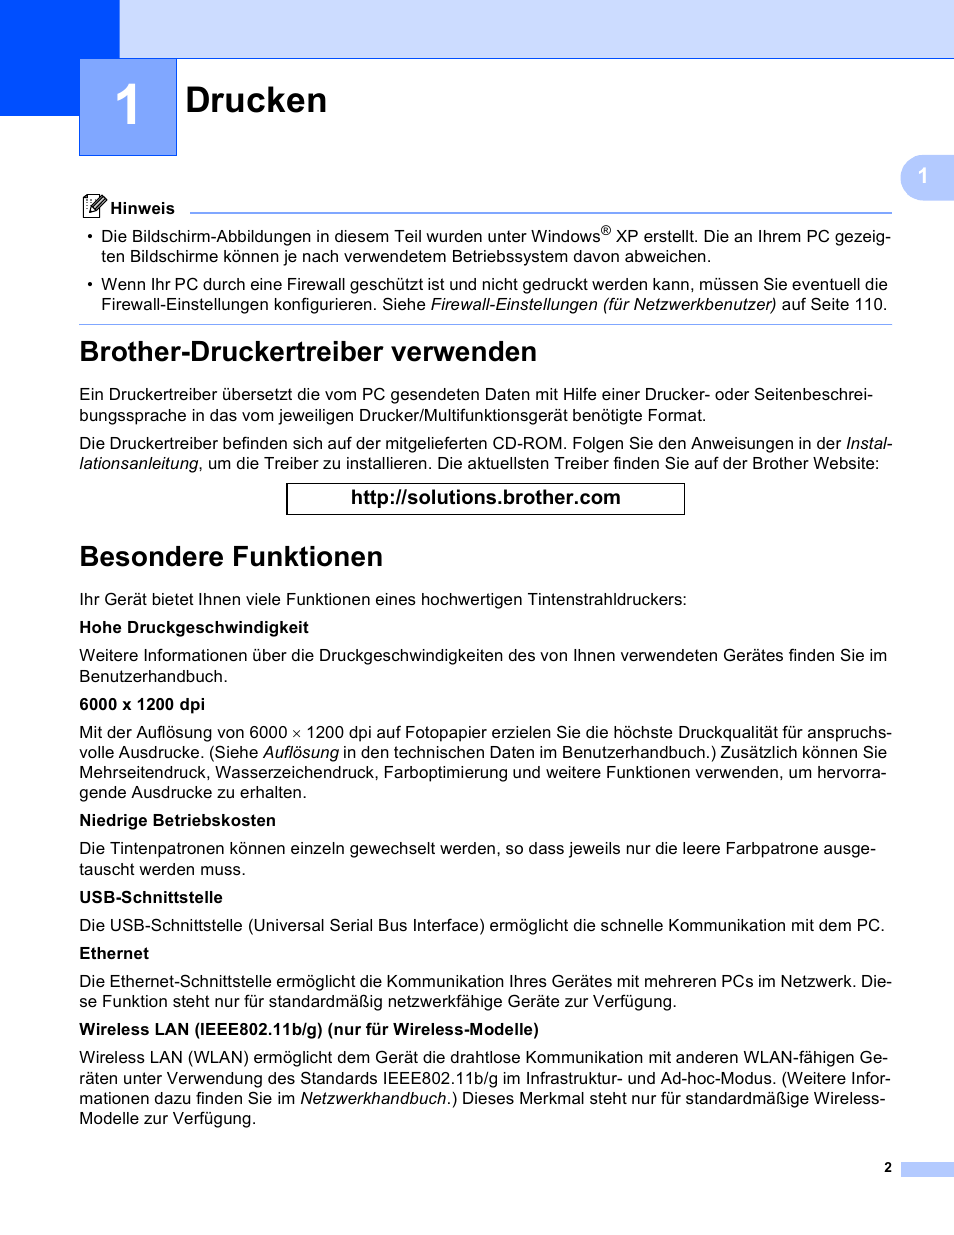 Drucken, Brother-druckertreiber verwenden, Besondere funktionen | Brother dcp 150c Benutzerhandbuch | Seite 8 / 171